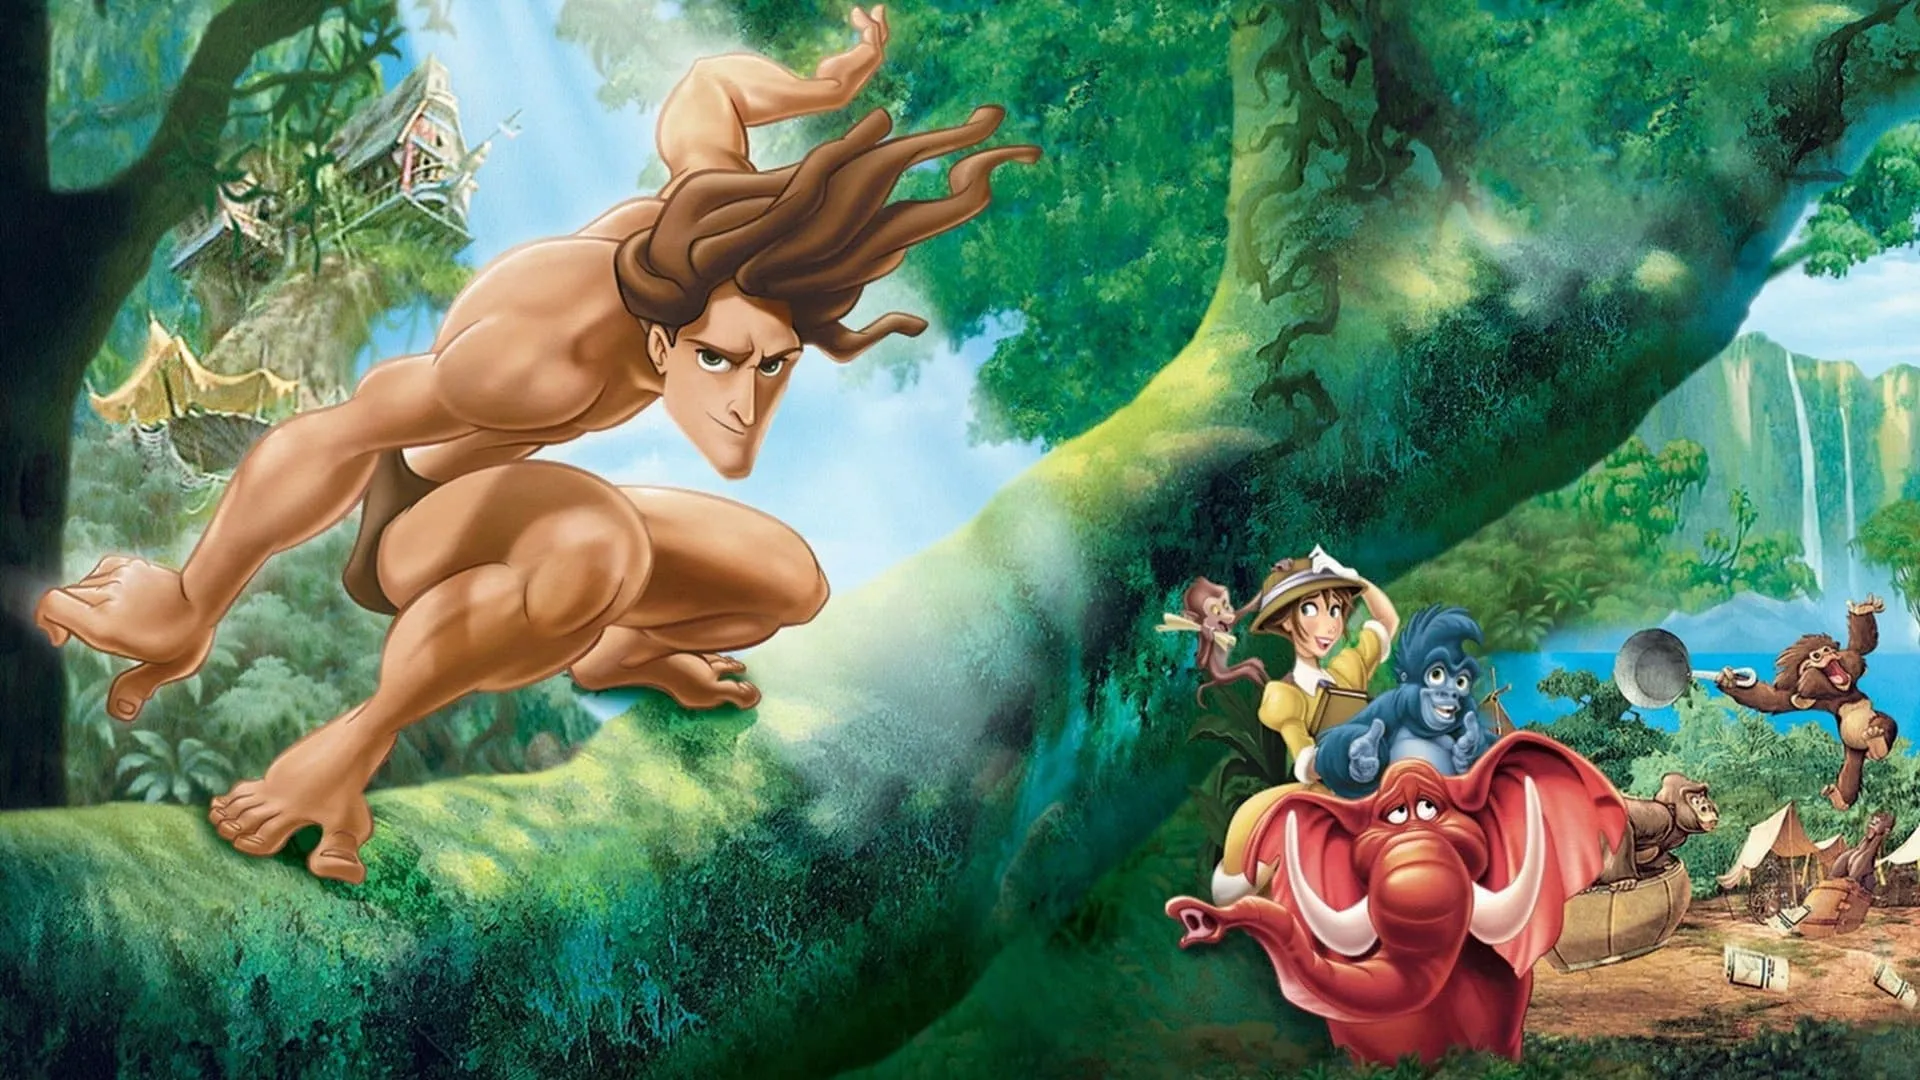 Tarzan (NL)